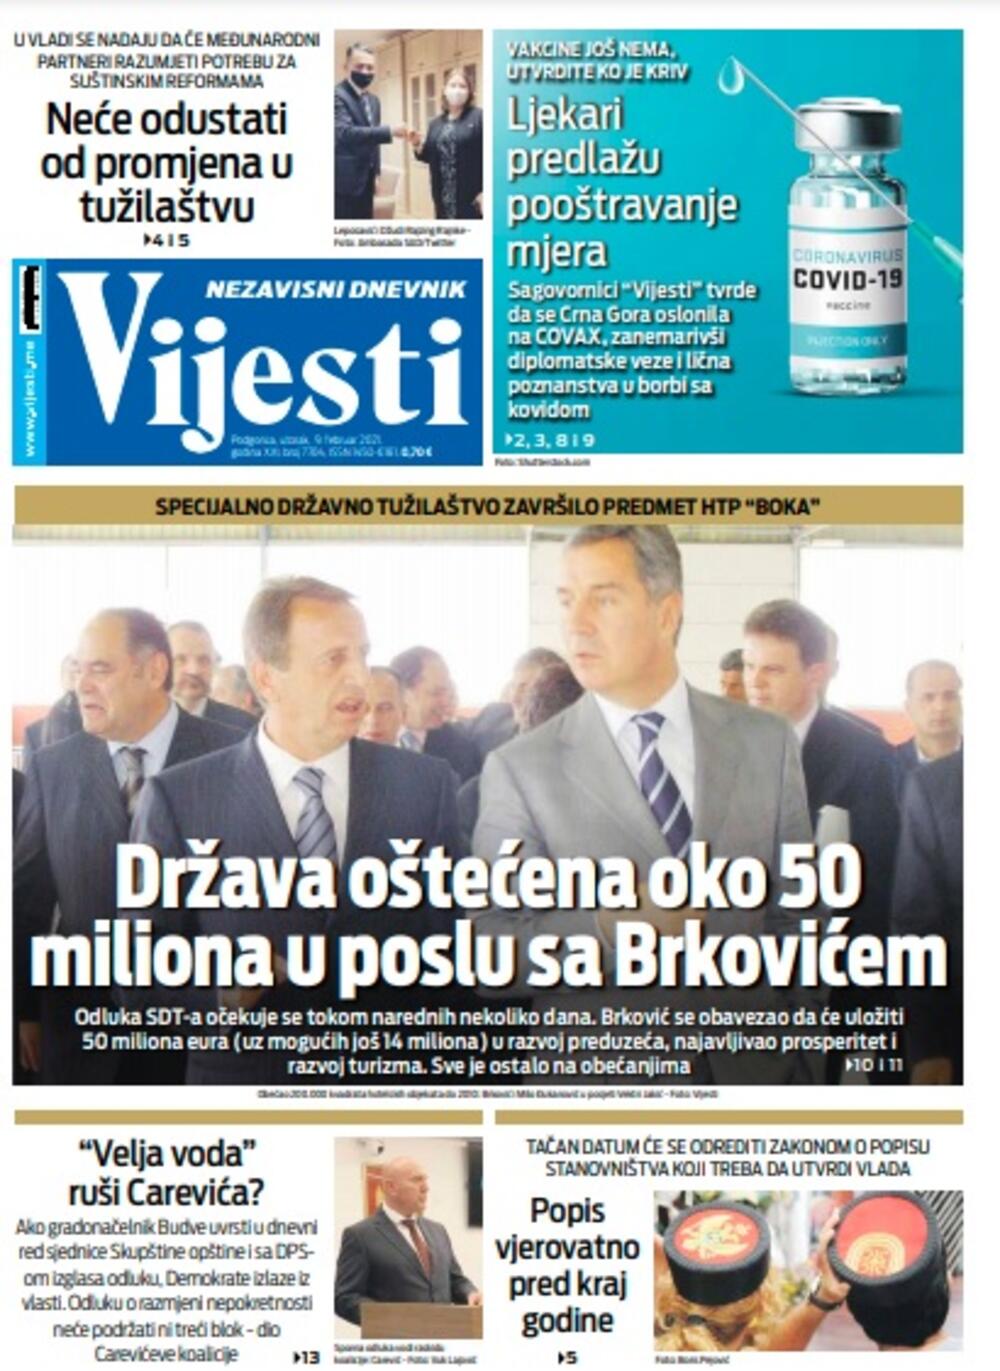 Naslovna strana "Vijesti" za utorak 9. februar 2021. godine, Foto: Vijesti